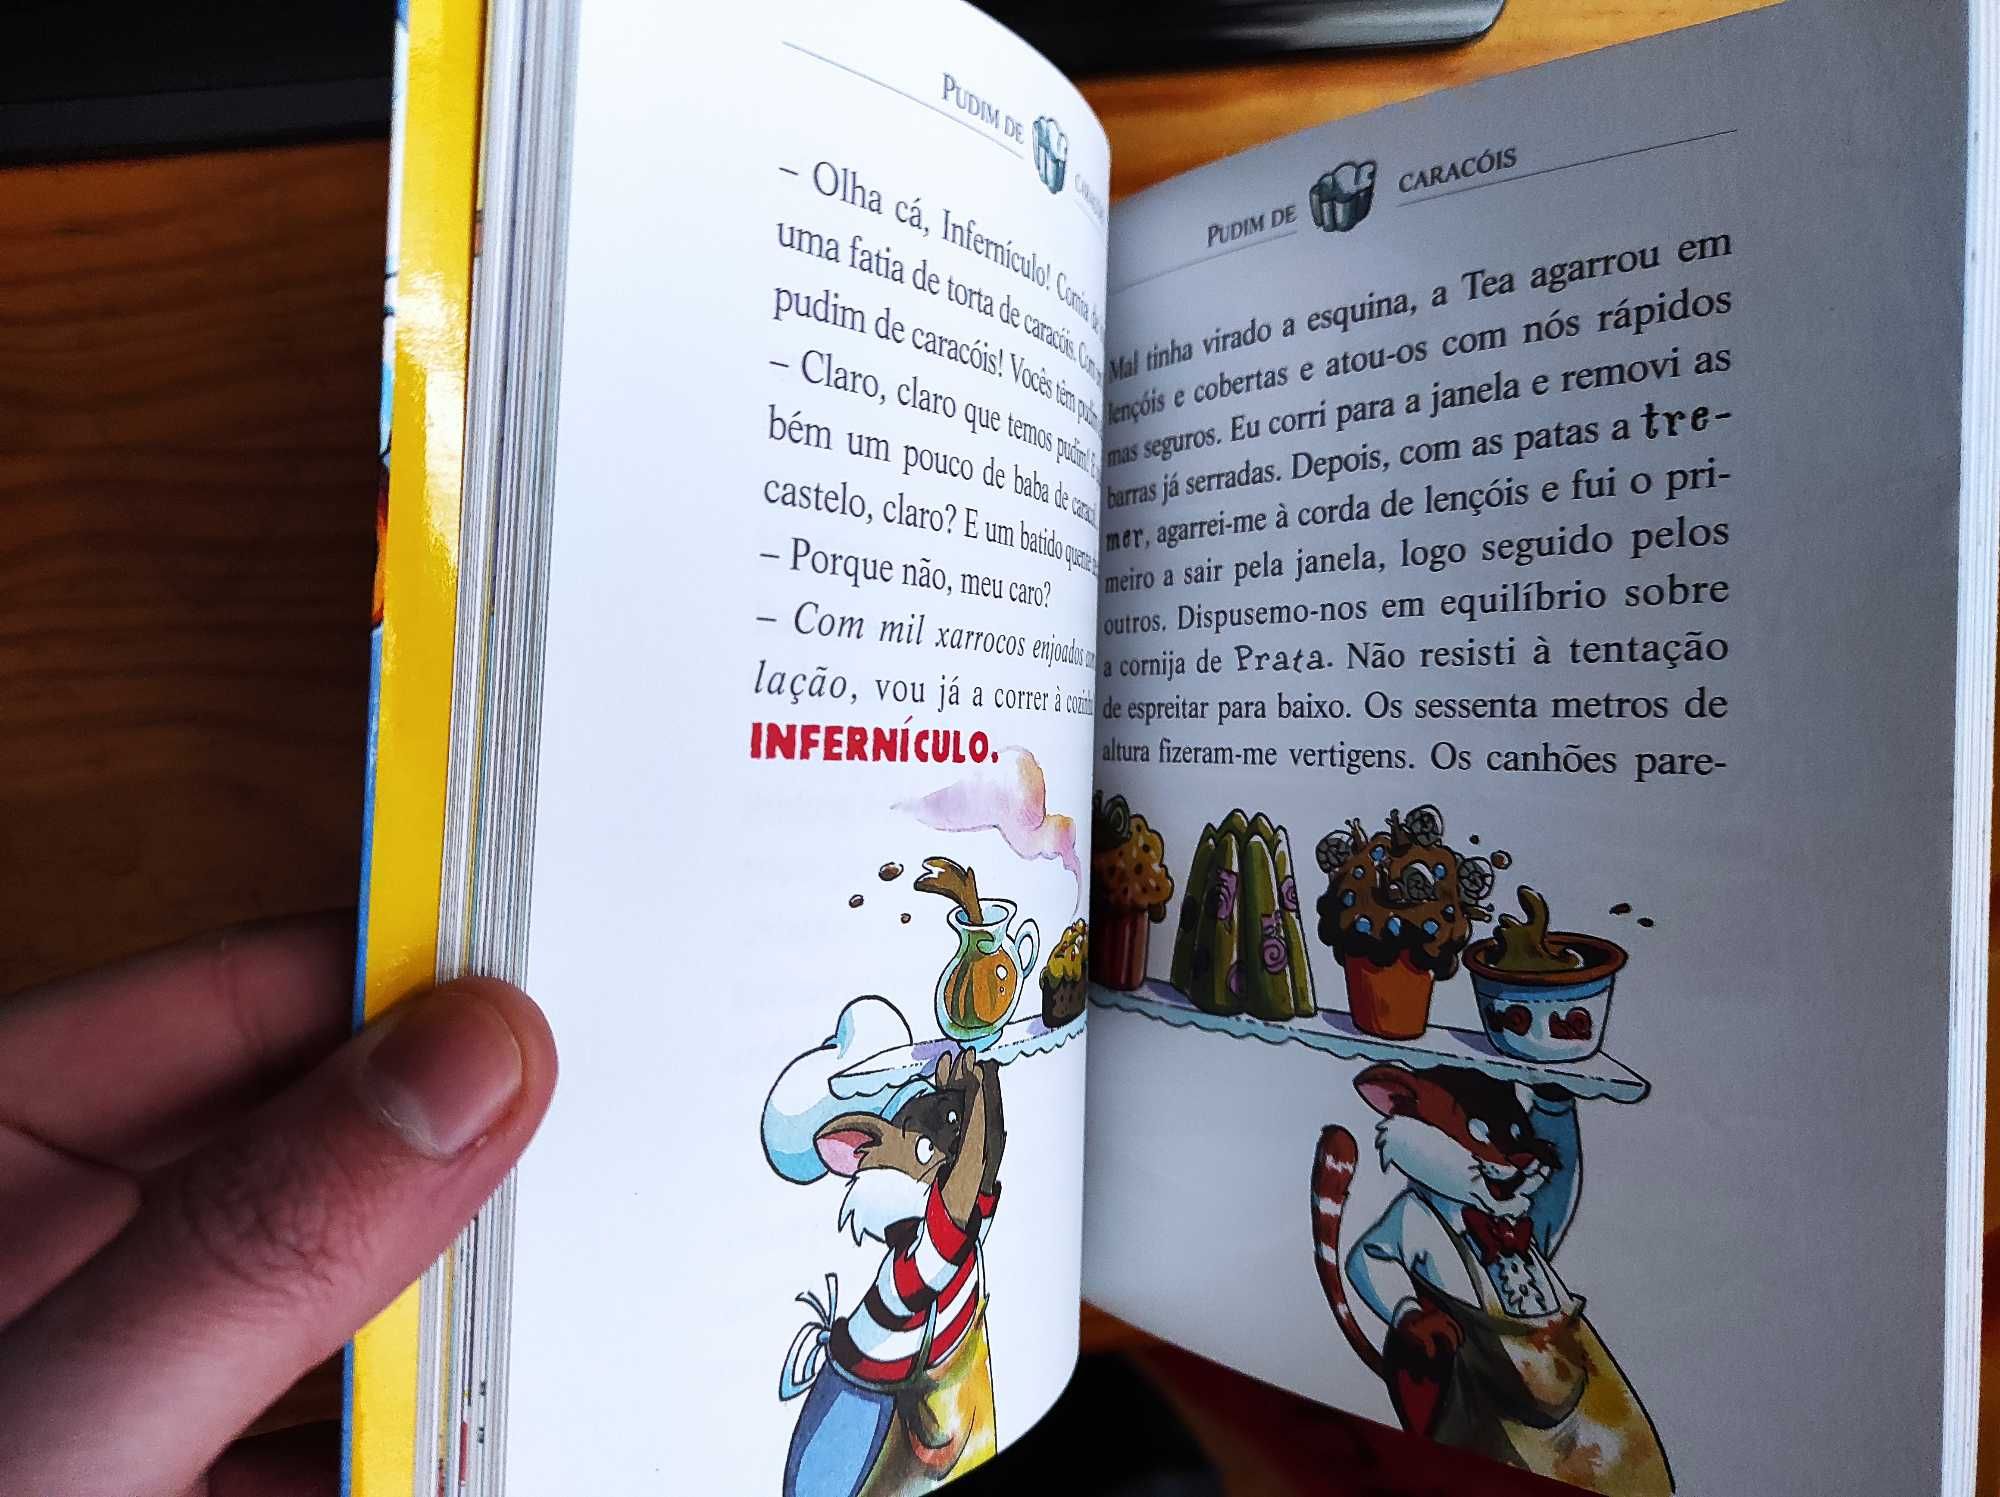 Livros para crianças - Feliz Aniversário Donald!, Pinóquio, Mulan